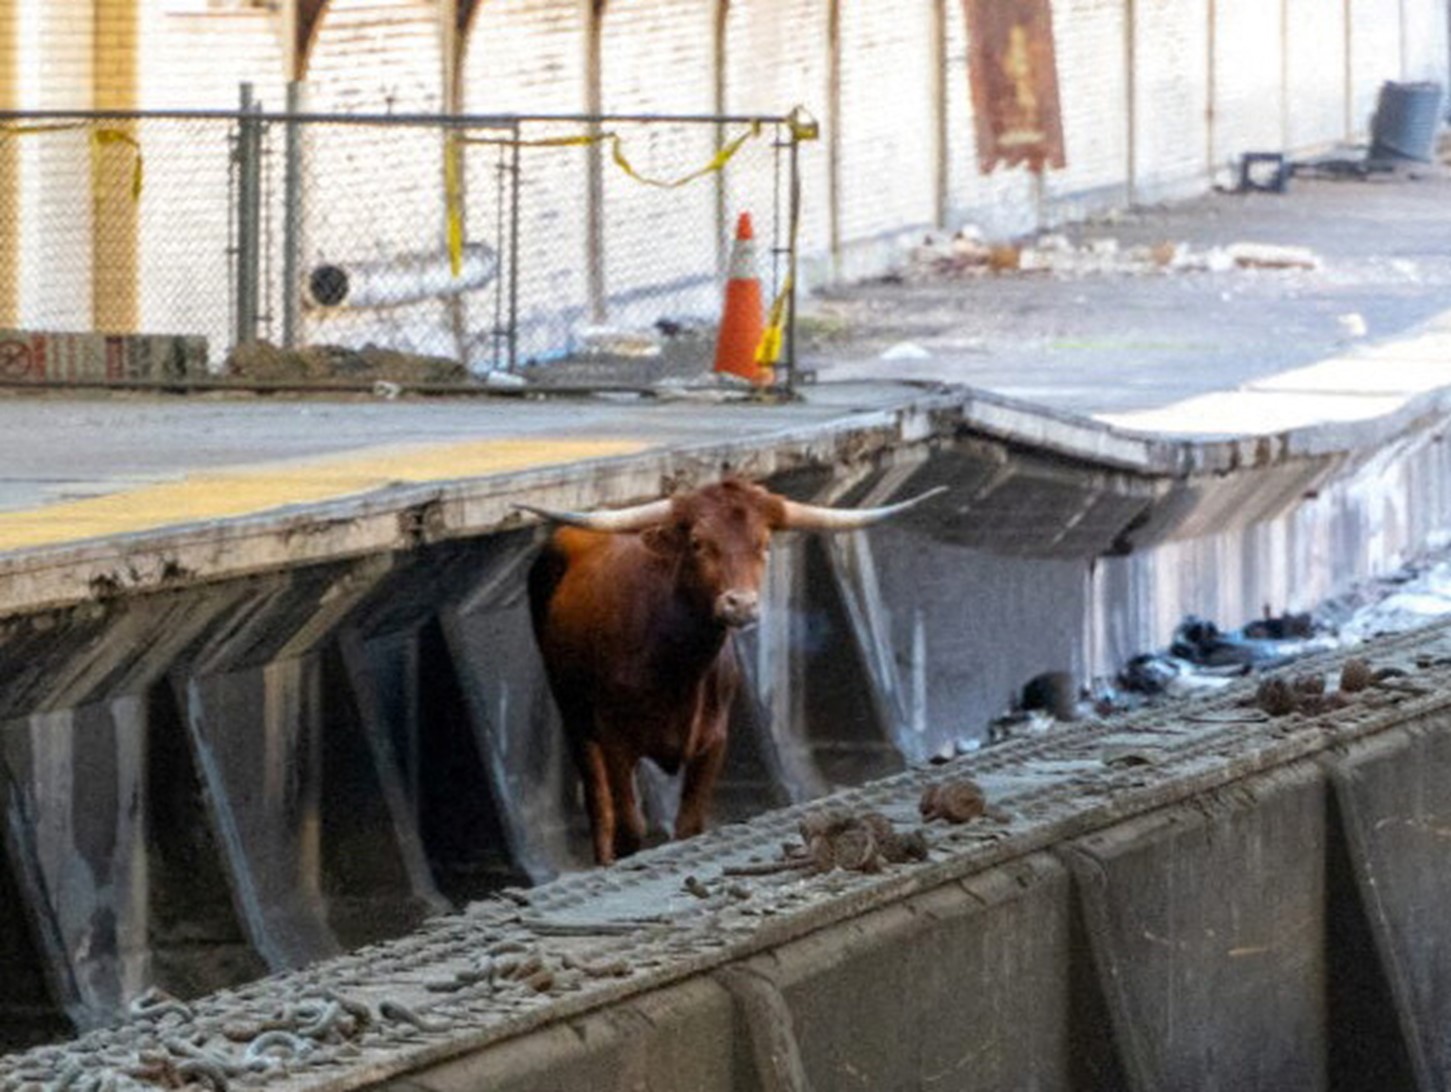 Bull on the NJ traintracks